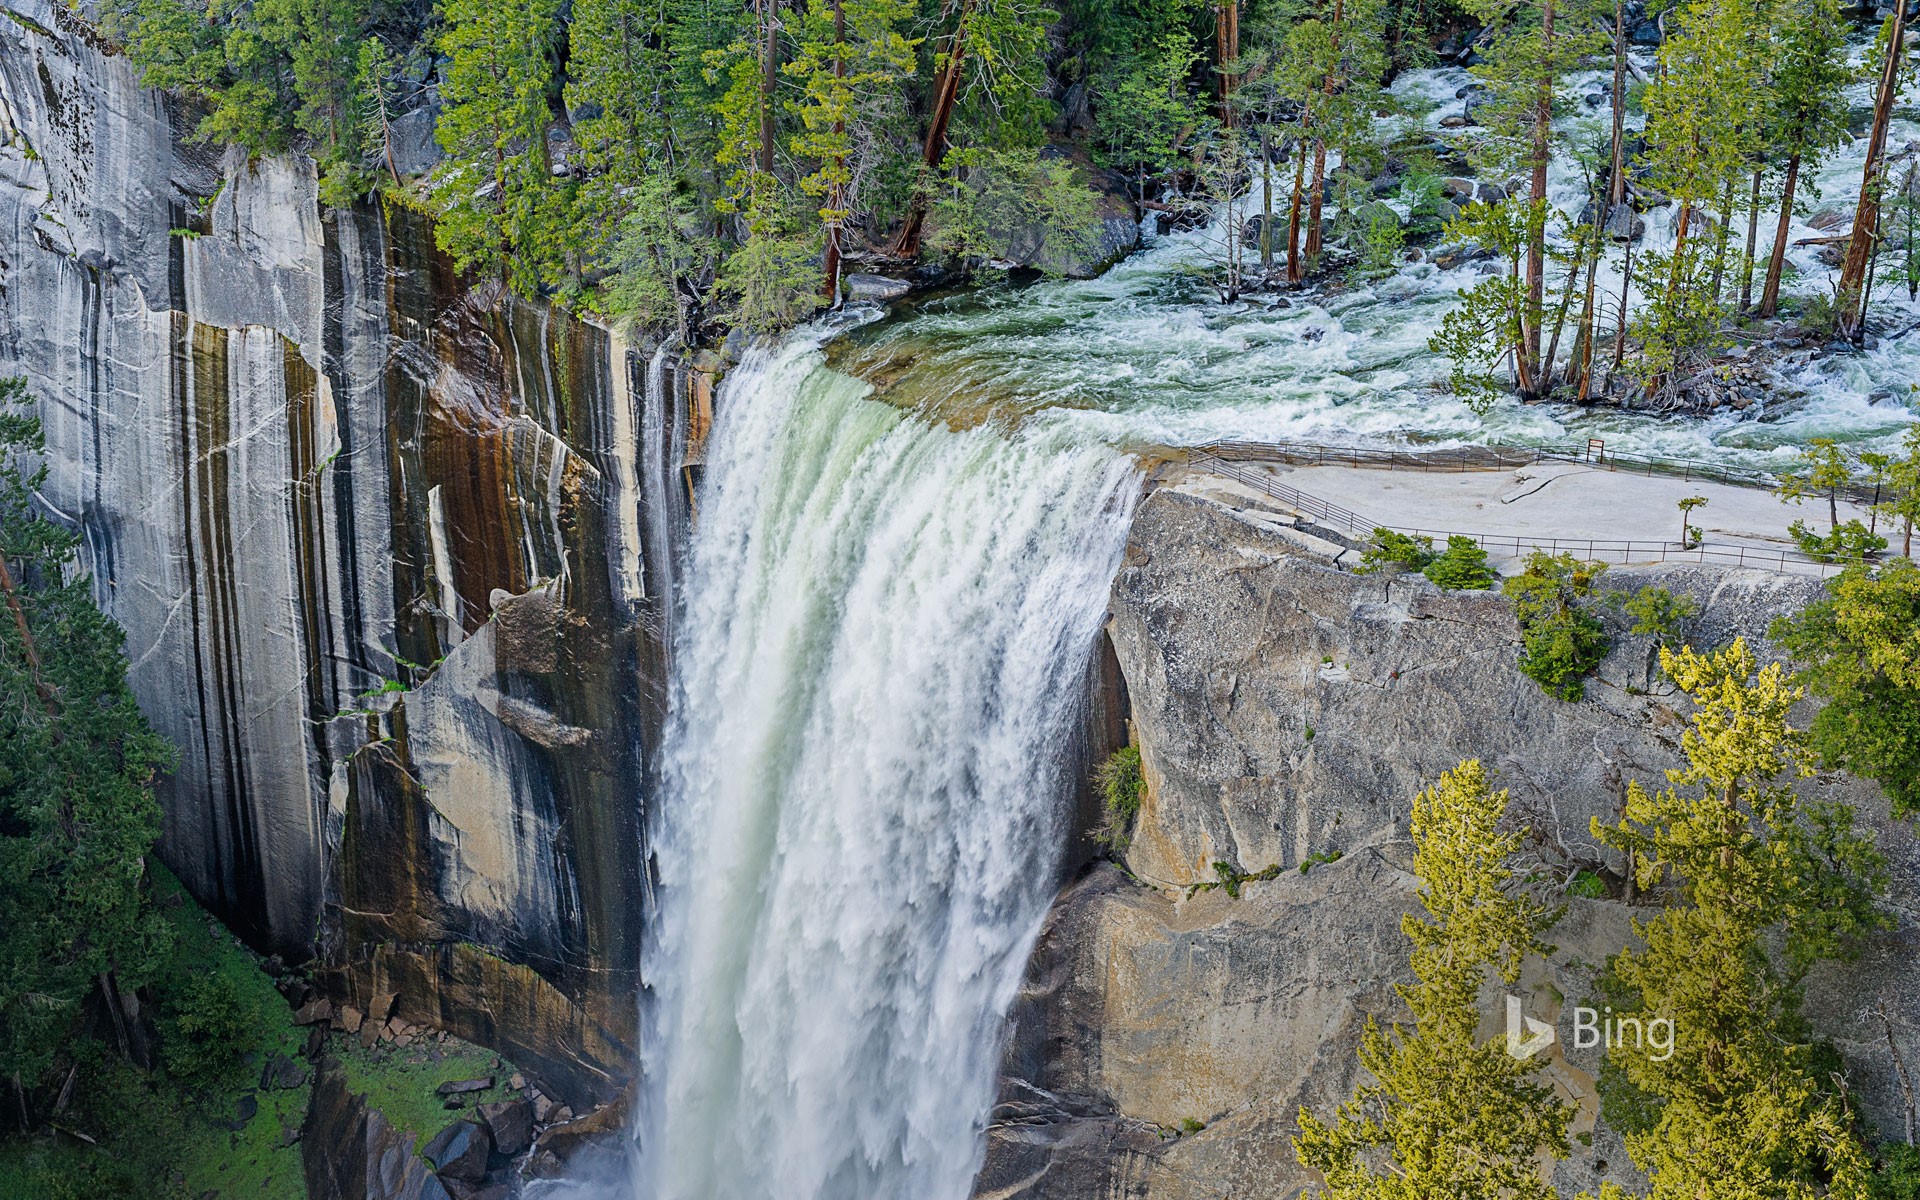 Vernal Fall in Yosemite National Park, California